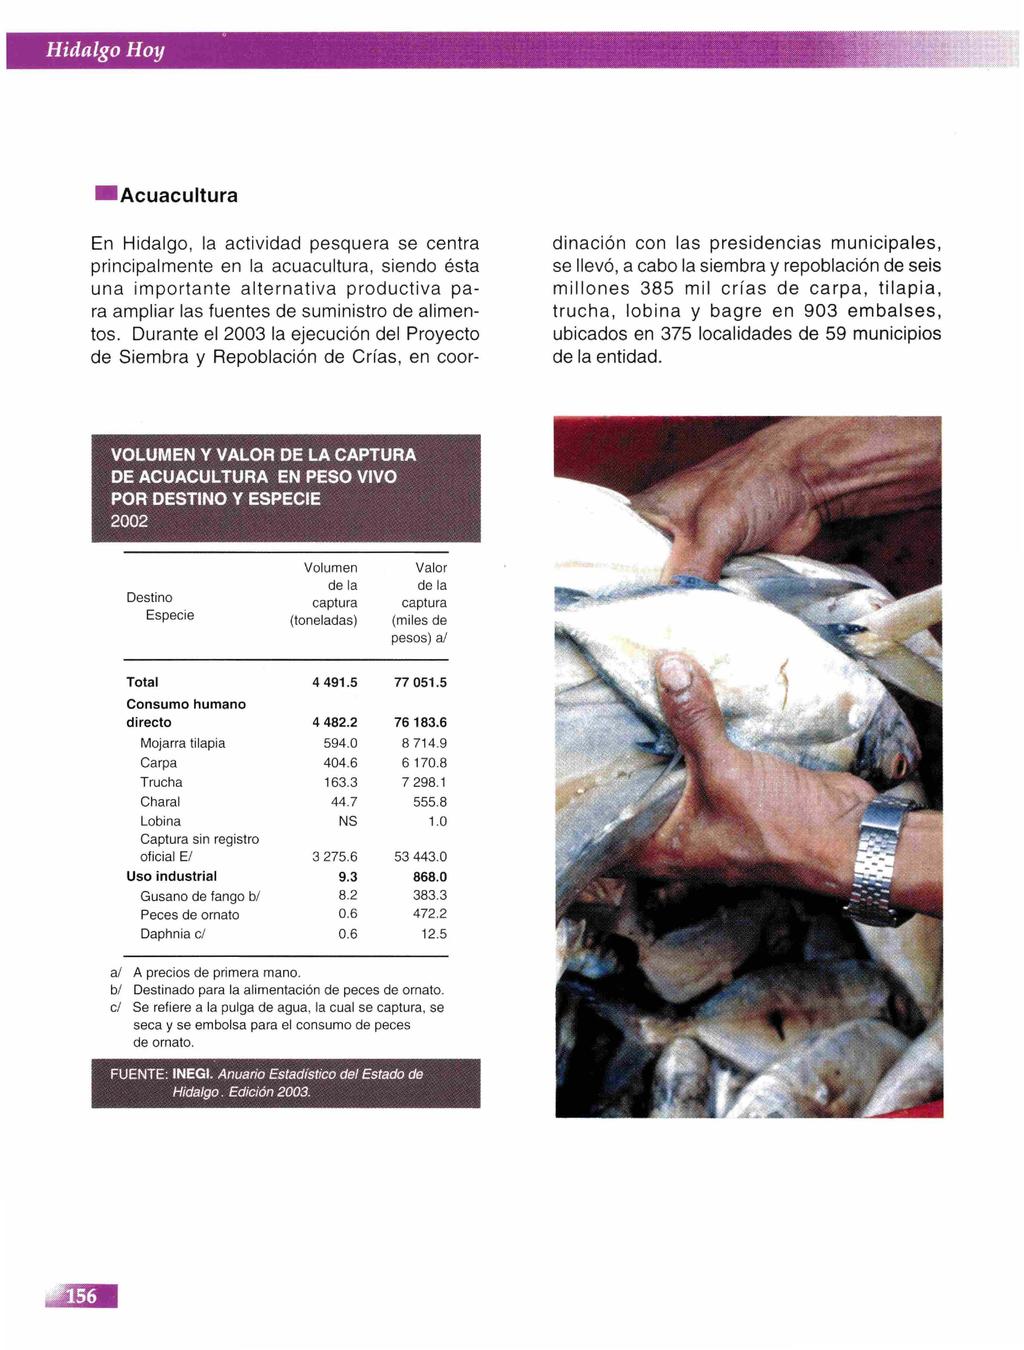 Acuacultura En Hidalgo, la actividad pesquera se centra principalmente en la acuacultura, siendo ésta una importante alternativa productiva para ampliar las fuentes de suministro de alimentos.